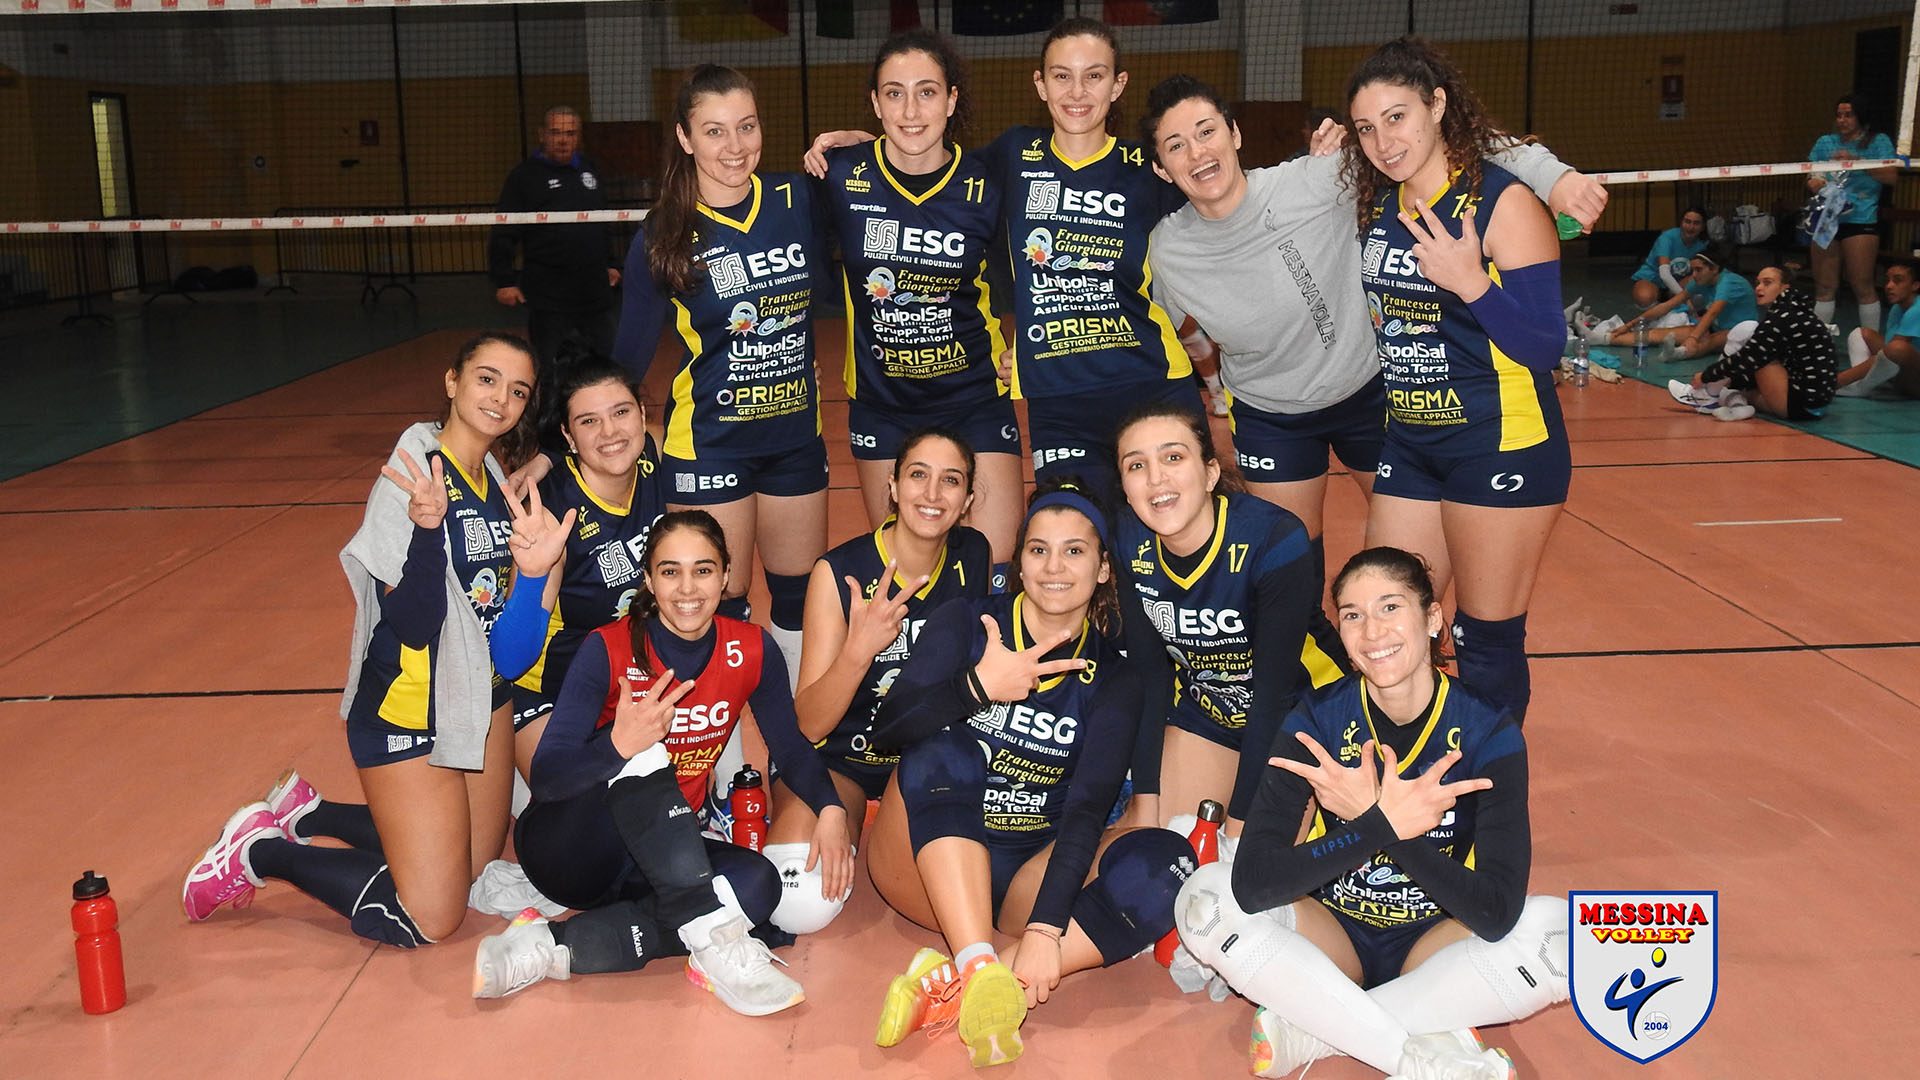 Le ragazze del Messina Volley